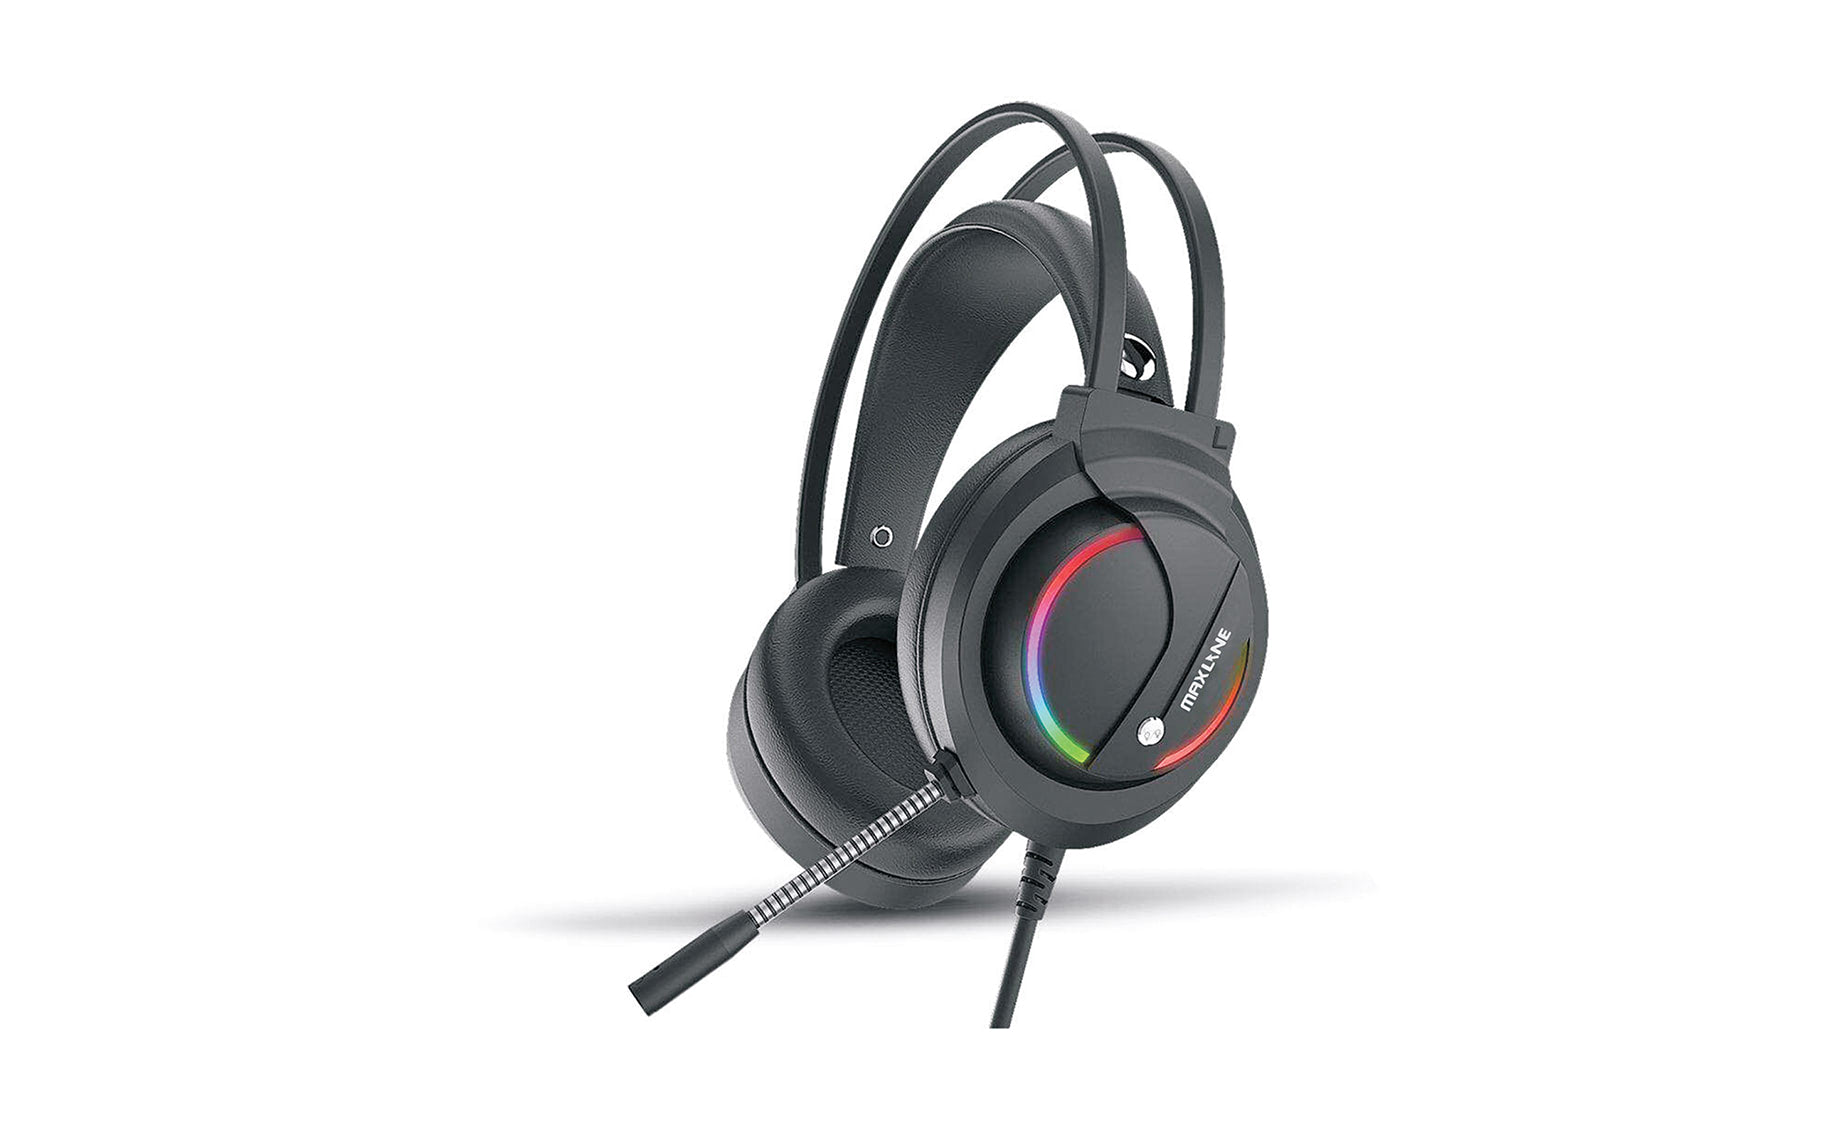 Maxline ML-GH06 RGB gaming slušalice